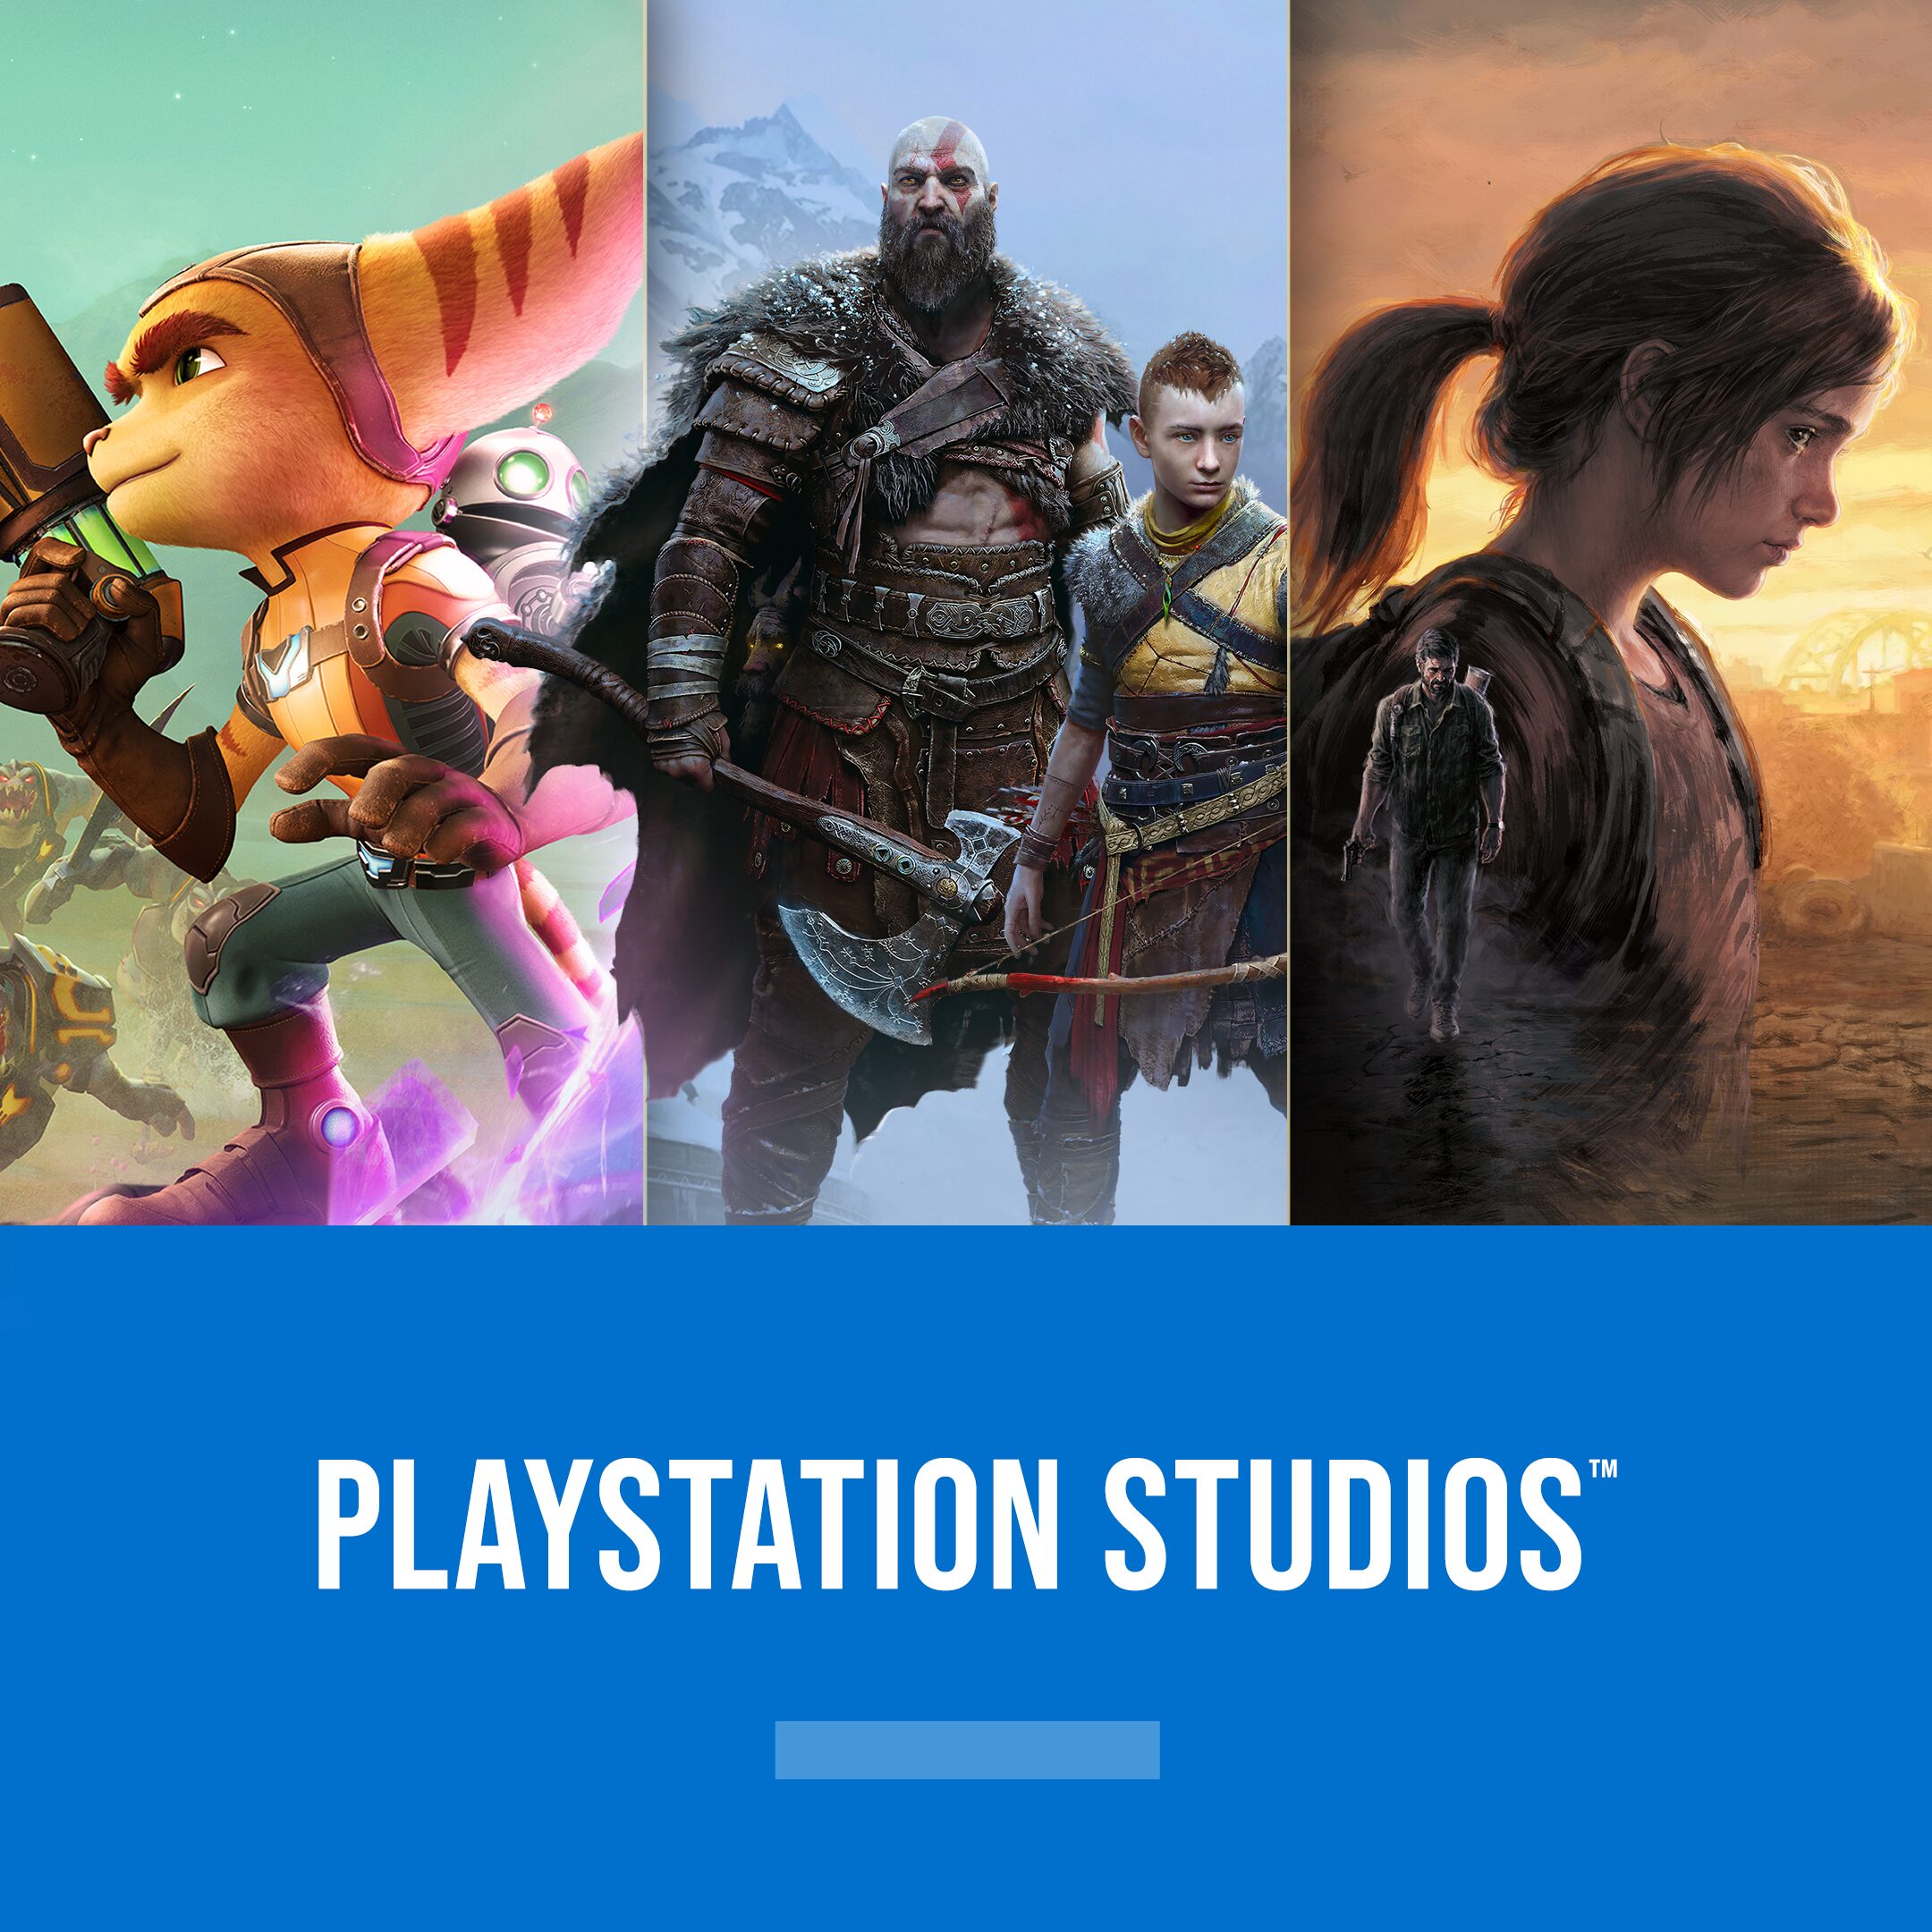 Más reciente  PlayStation™Store oficial Argentina